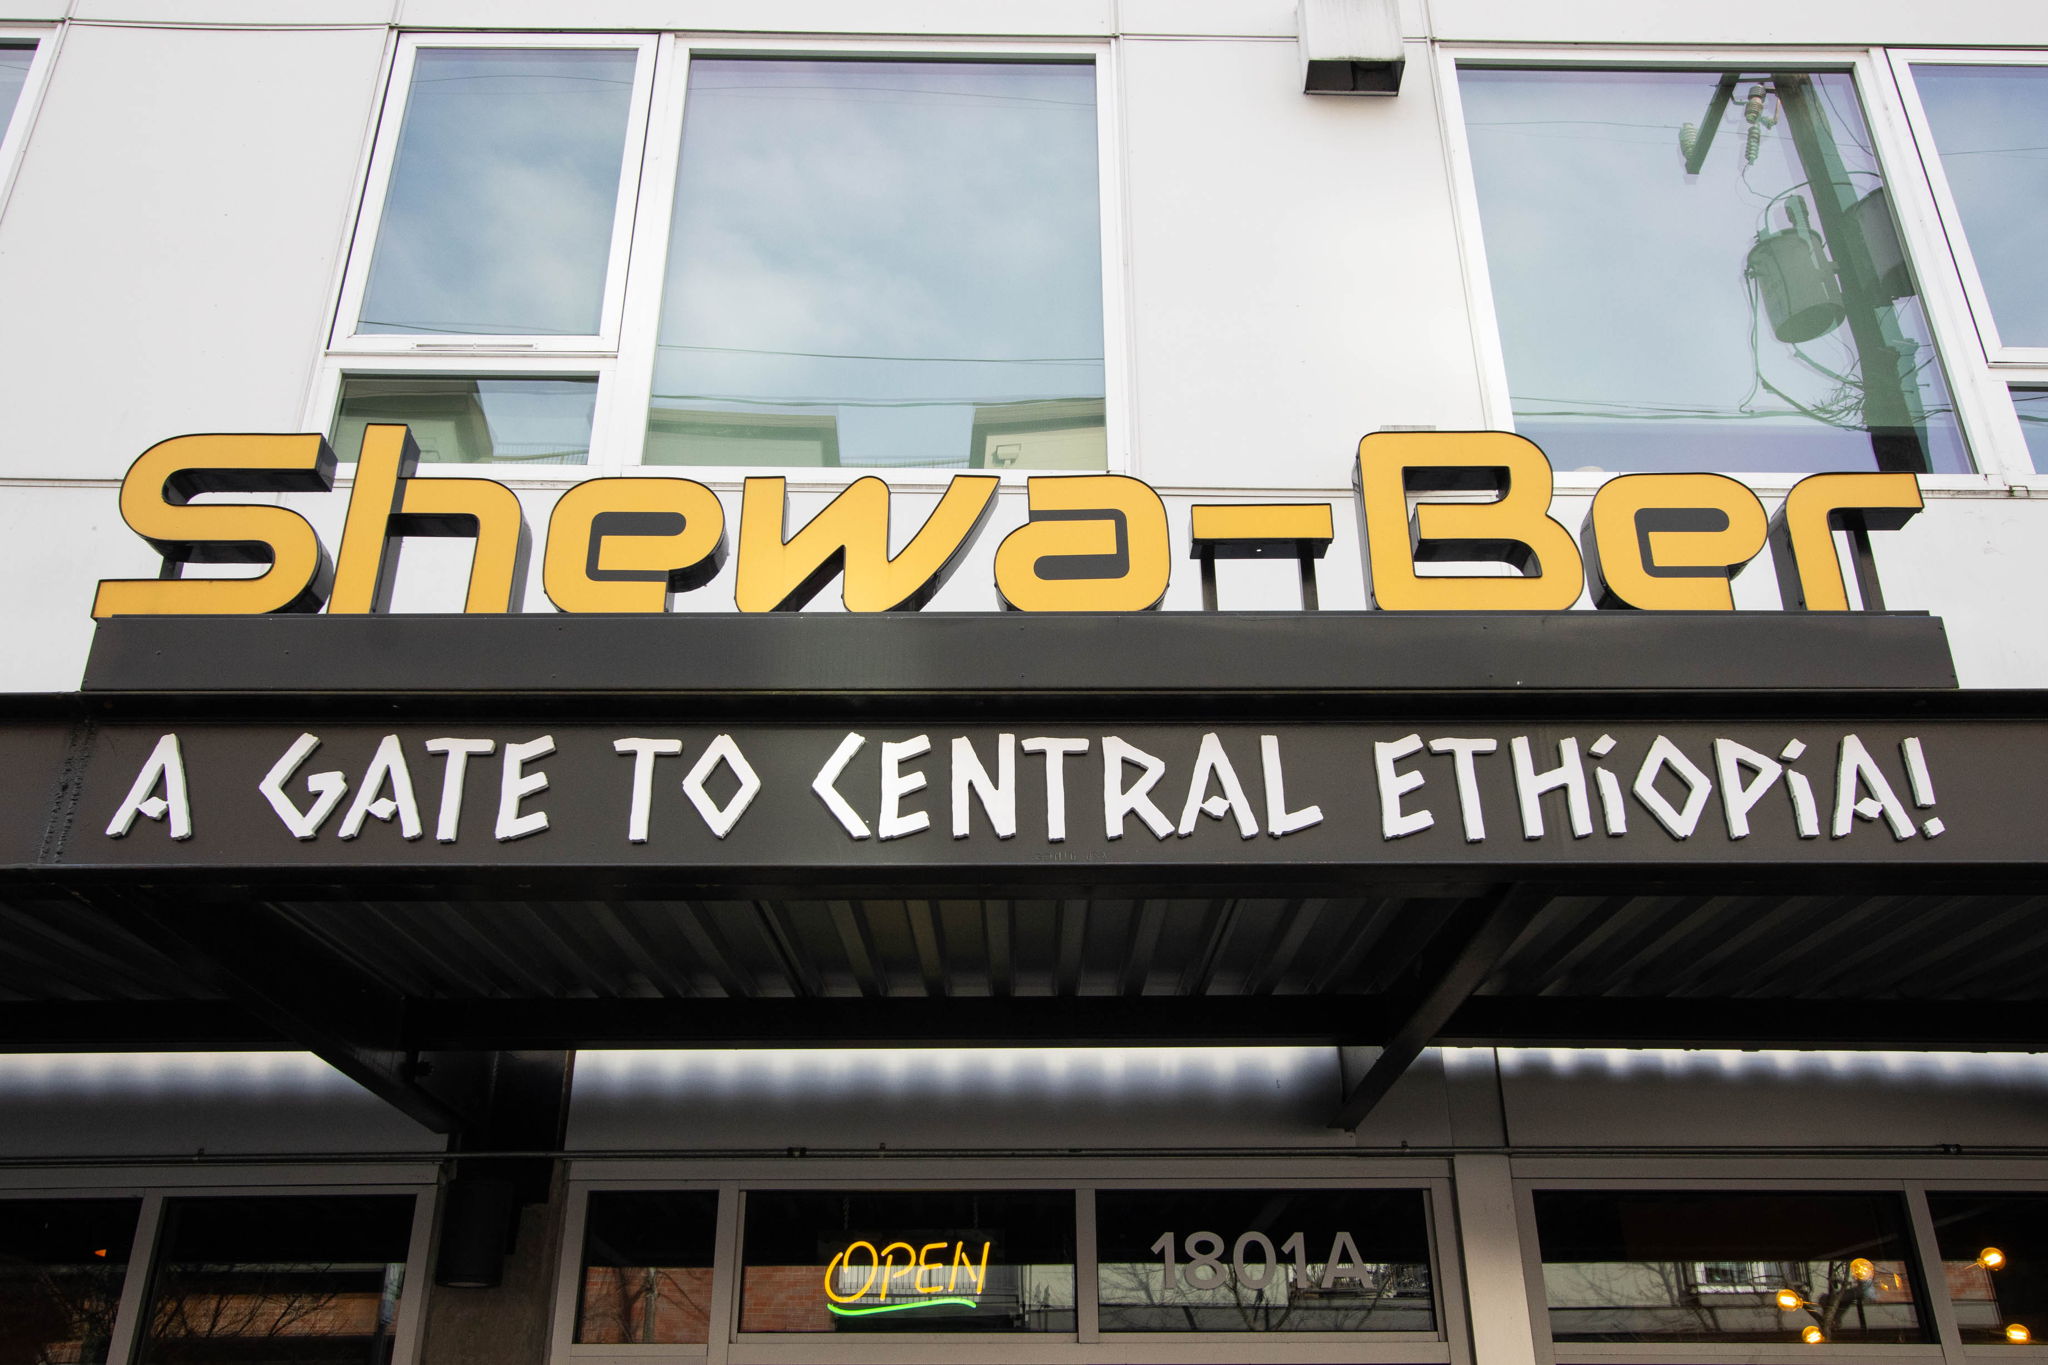 SHEWA-BER ETHIOPIAN RESTARAUNT